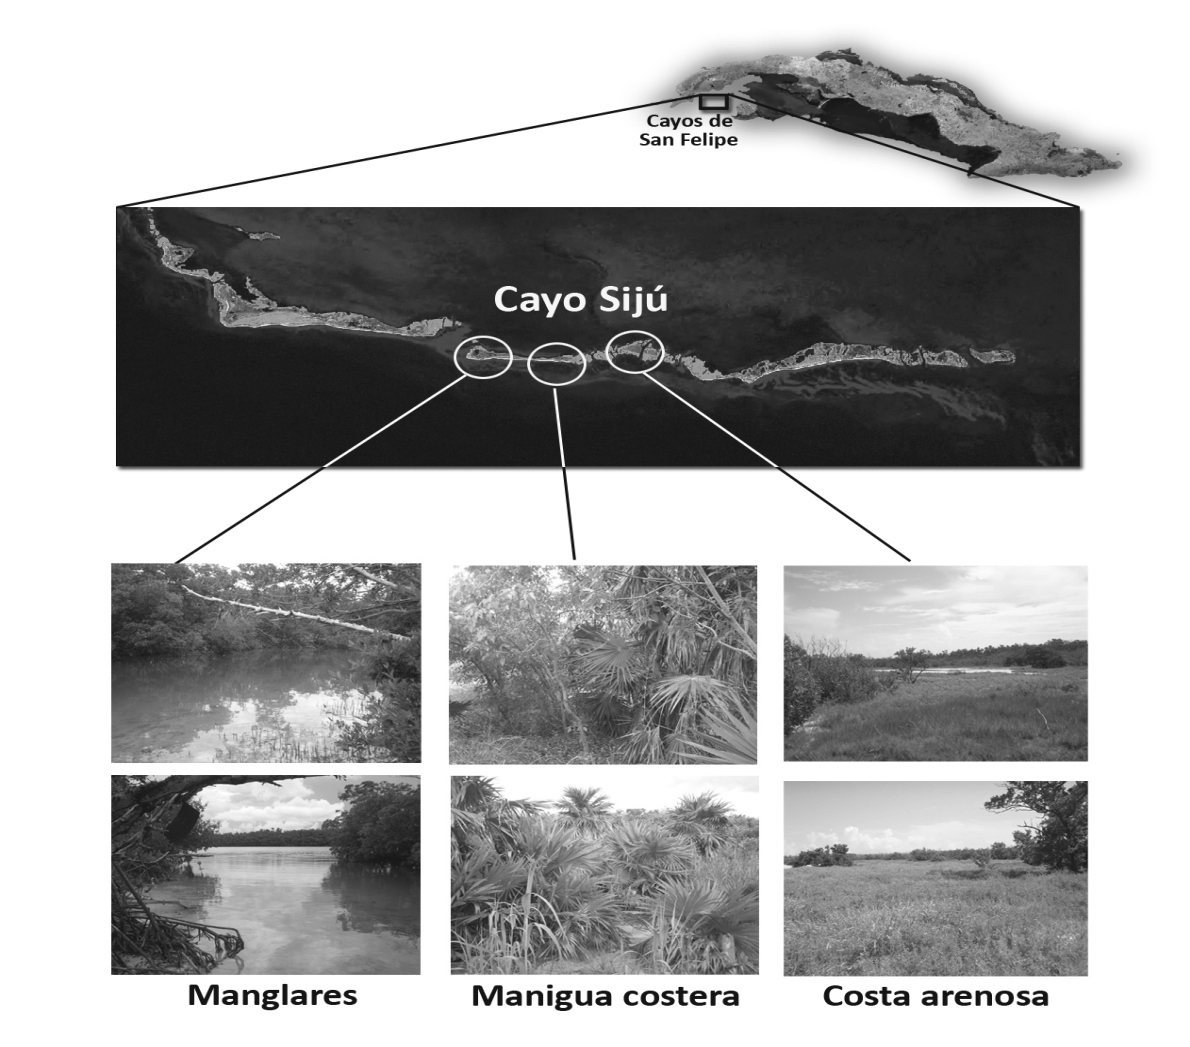 - 10 - Densidad de la iguana cubana donde habita y es muy sensible a los efectos de especies introducidas (Perera, 2000).